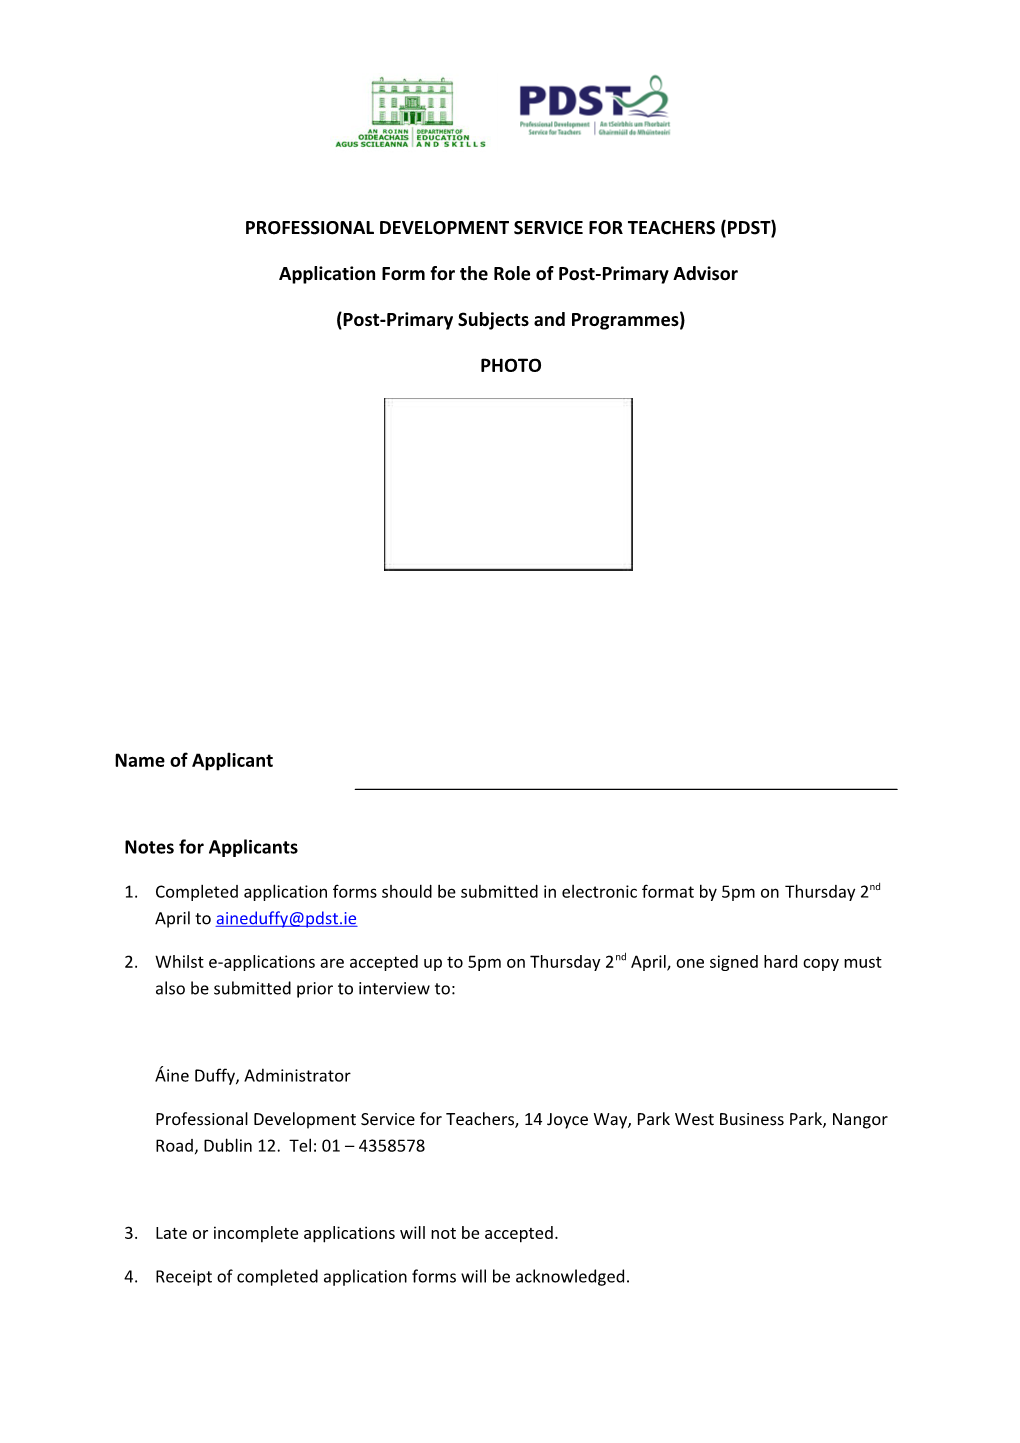 PDST Asssociate Application Form s1